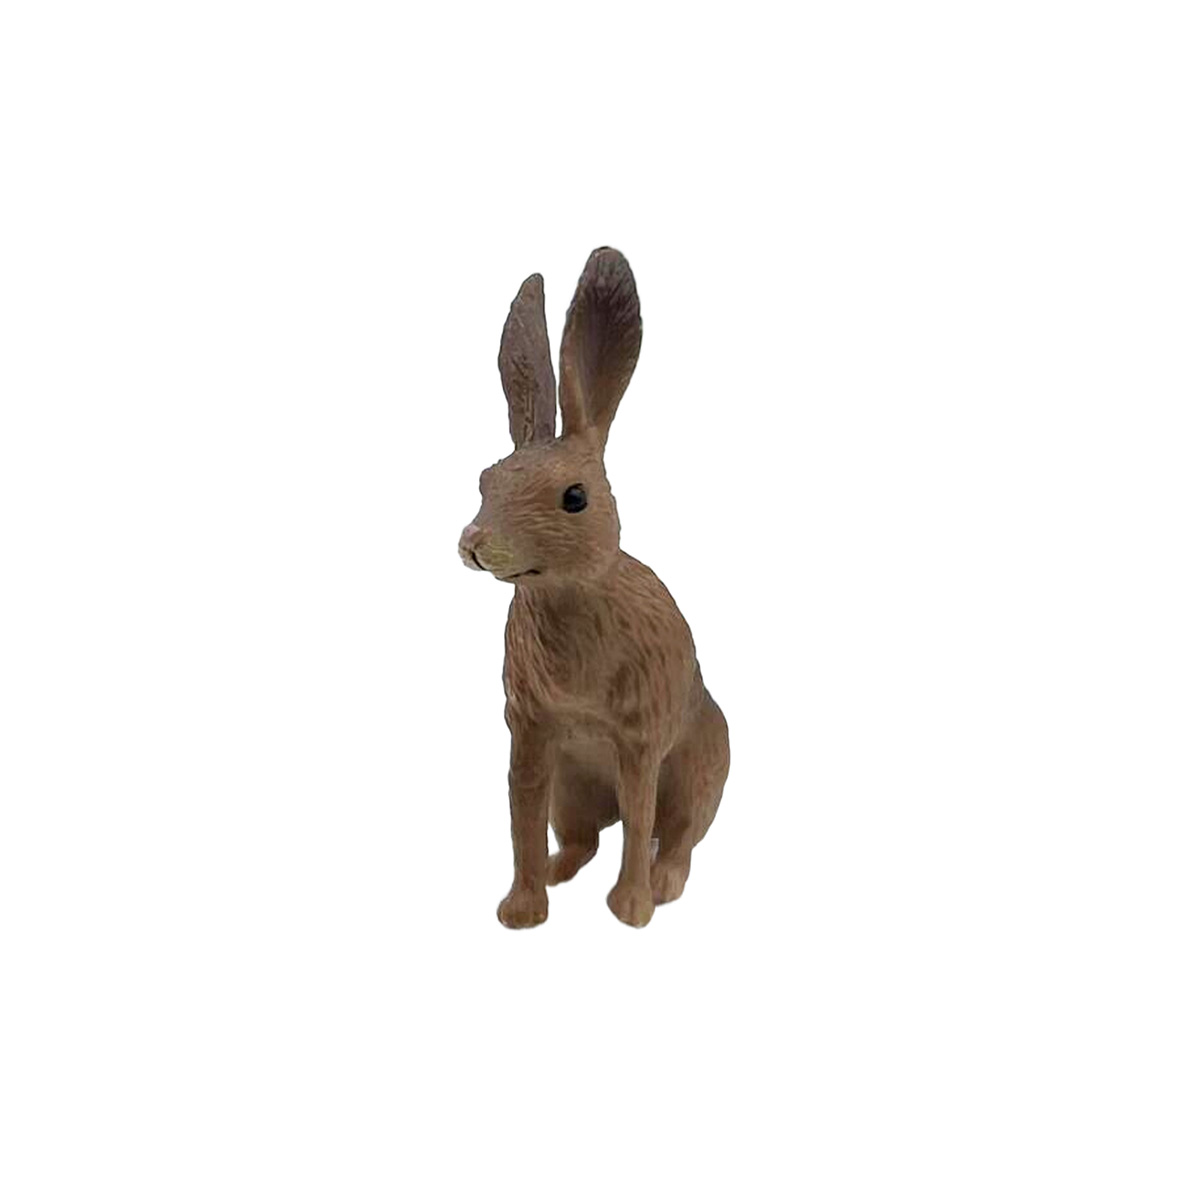 Детское Время M4190 Фигурка животного Заяц (сидит, цвета: коричневый,  черный) купить за 159,00 ₽ в интернет-магазине Леонардо